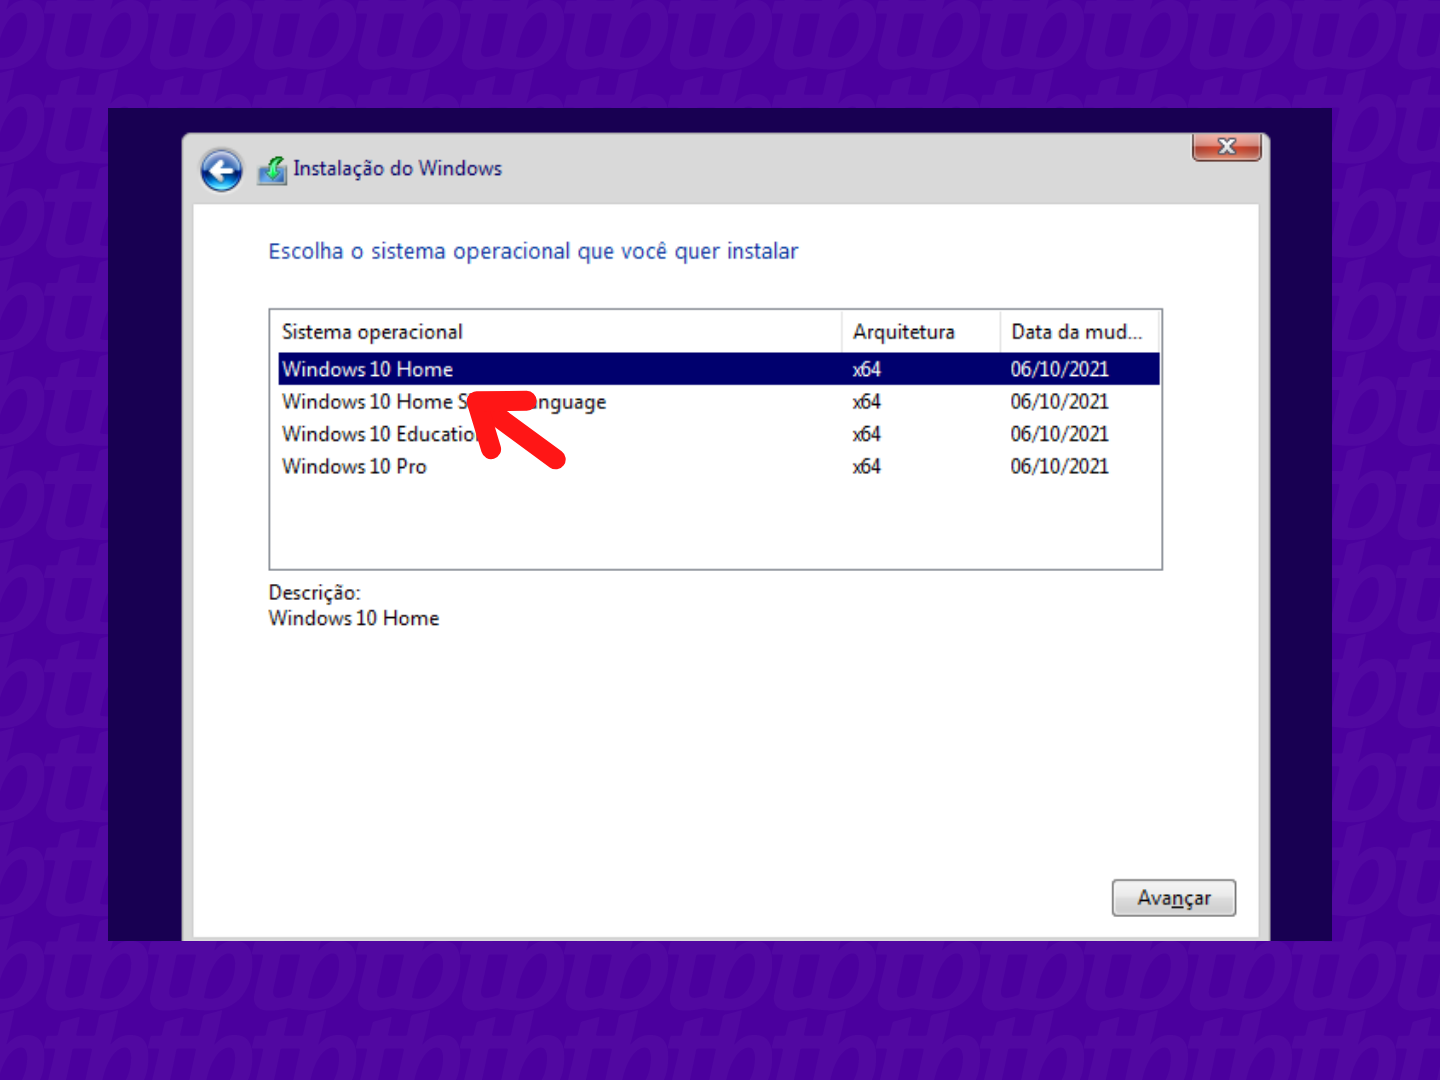 Tela de instalação do Windows 10 com a versão Home em destaque